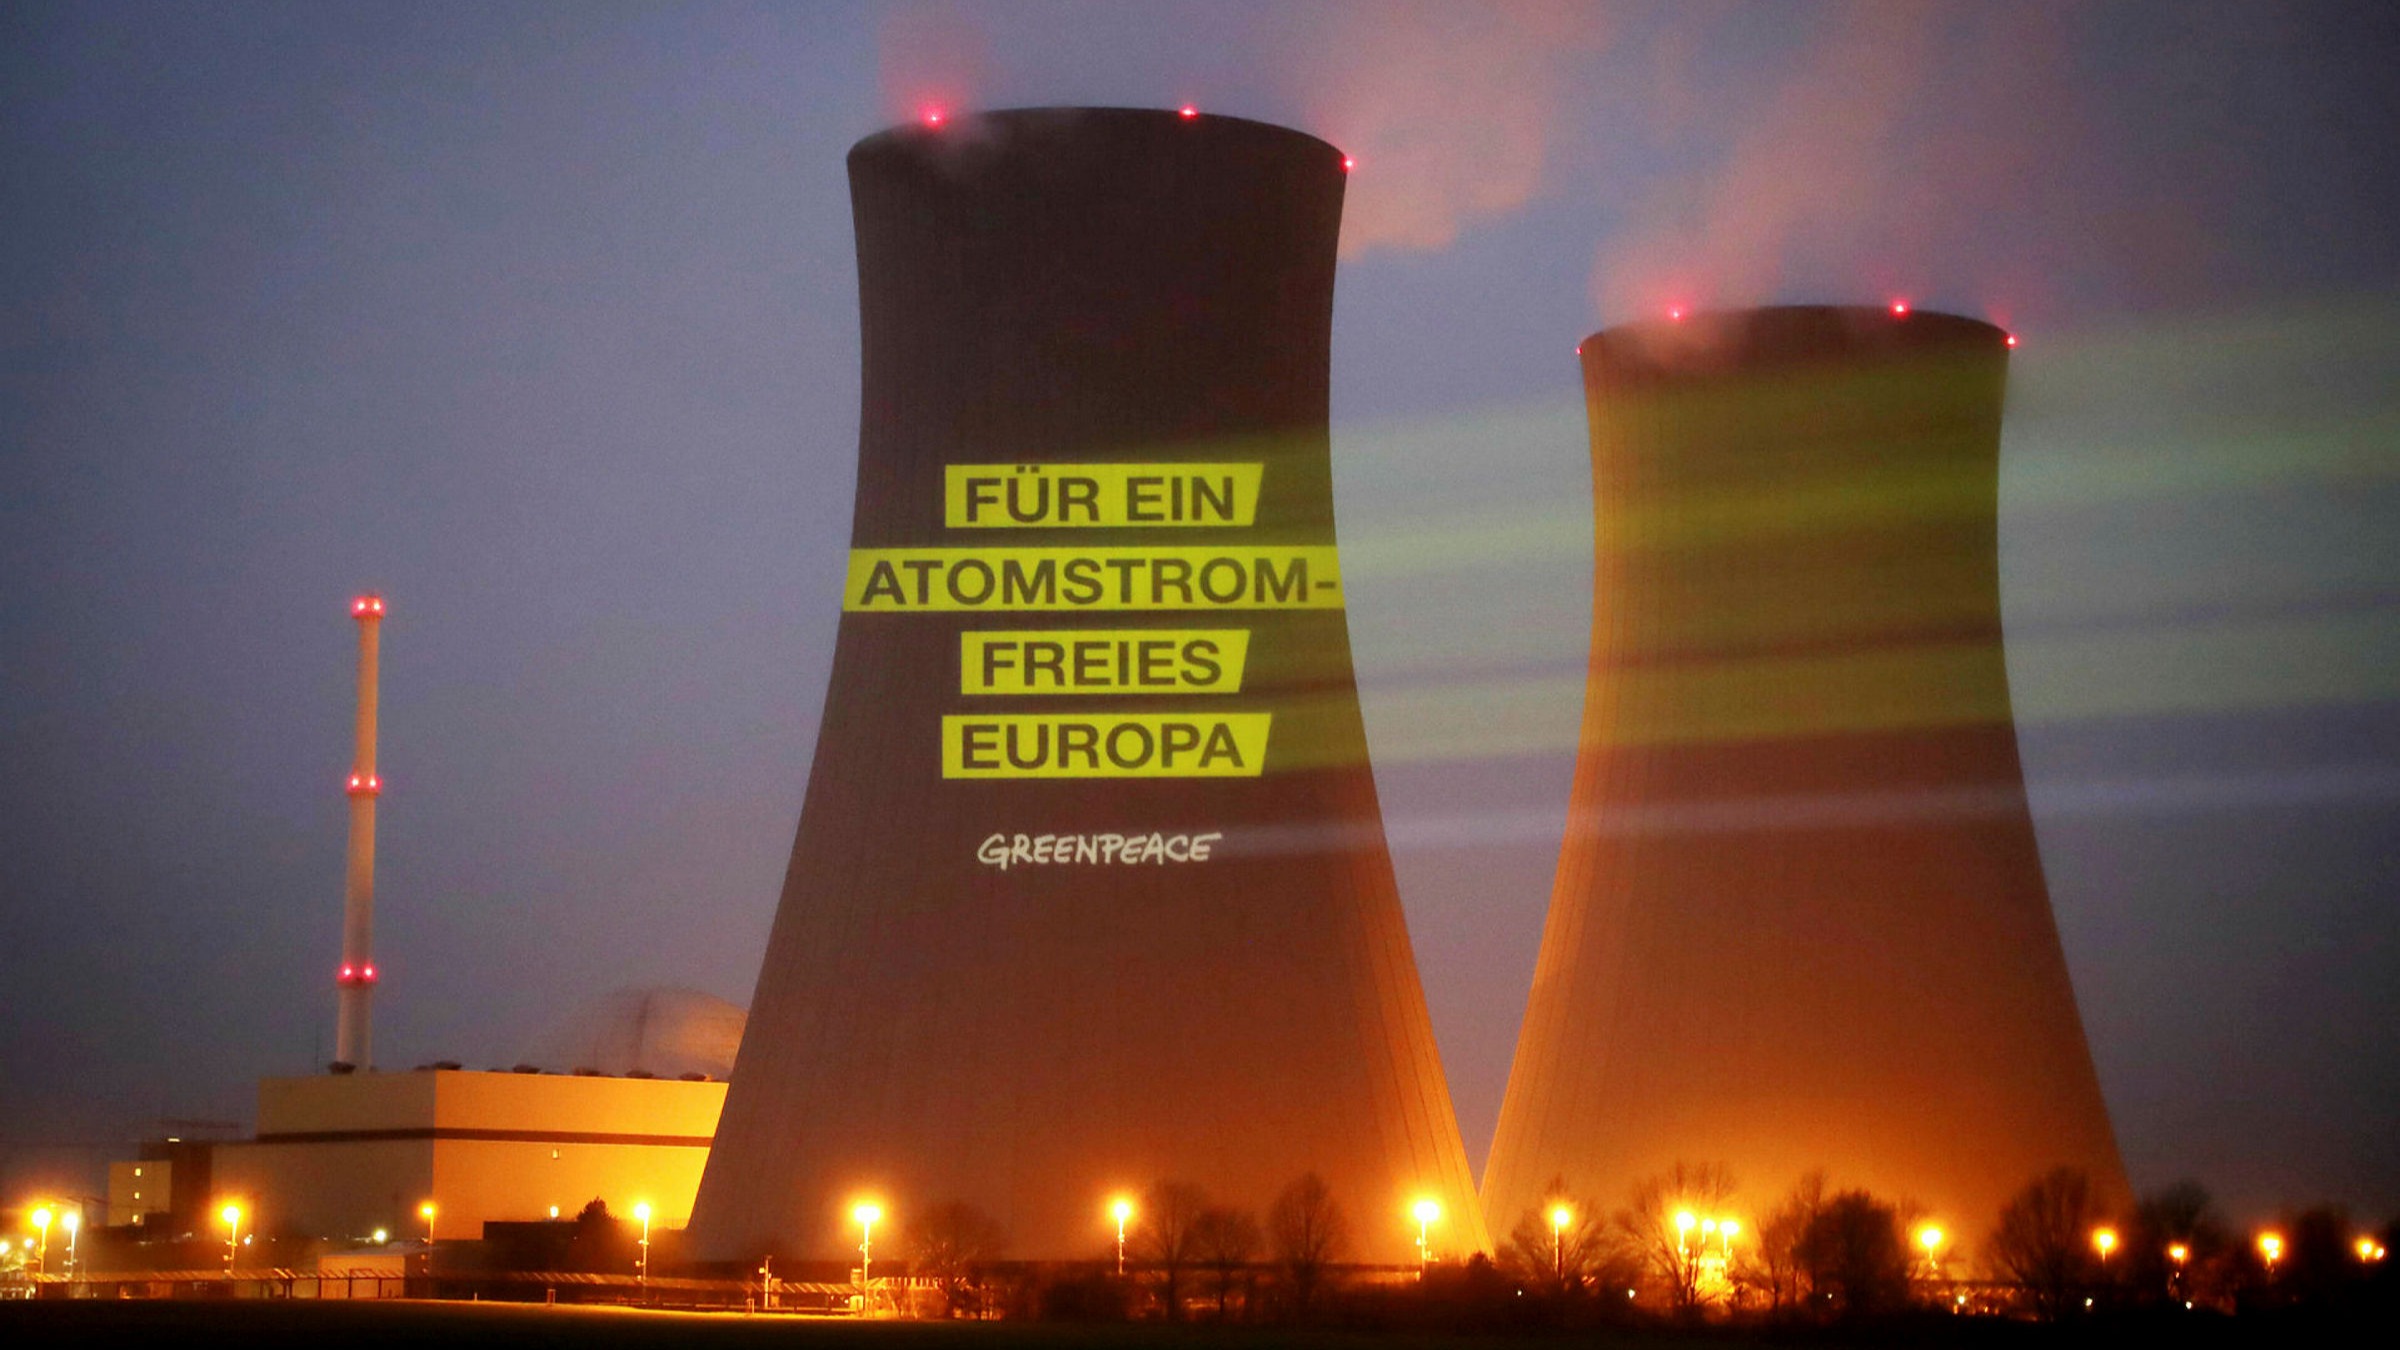 سبزهای آلمان حمله به طرح اتحادیه اروپا برای برچسب زدن به انرژی هسته ای را رهبری می کنند 